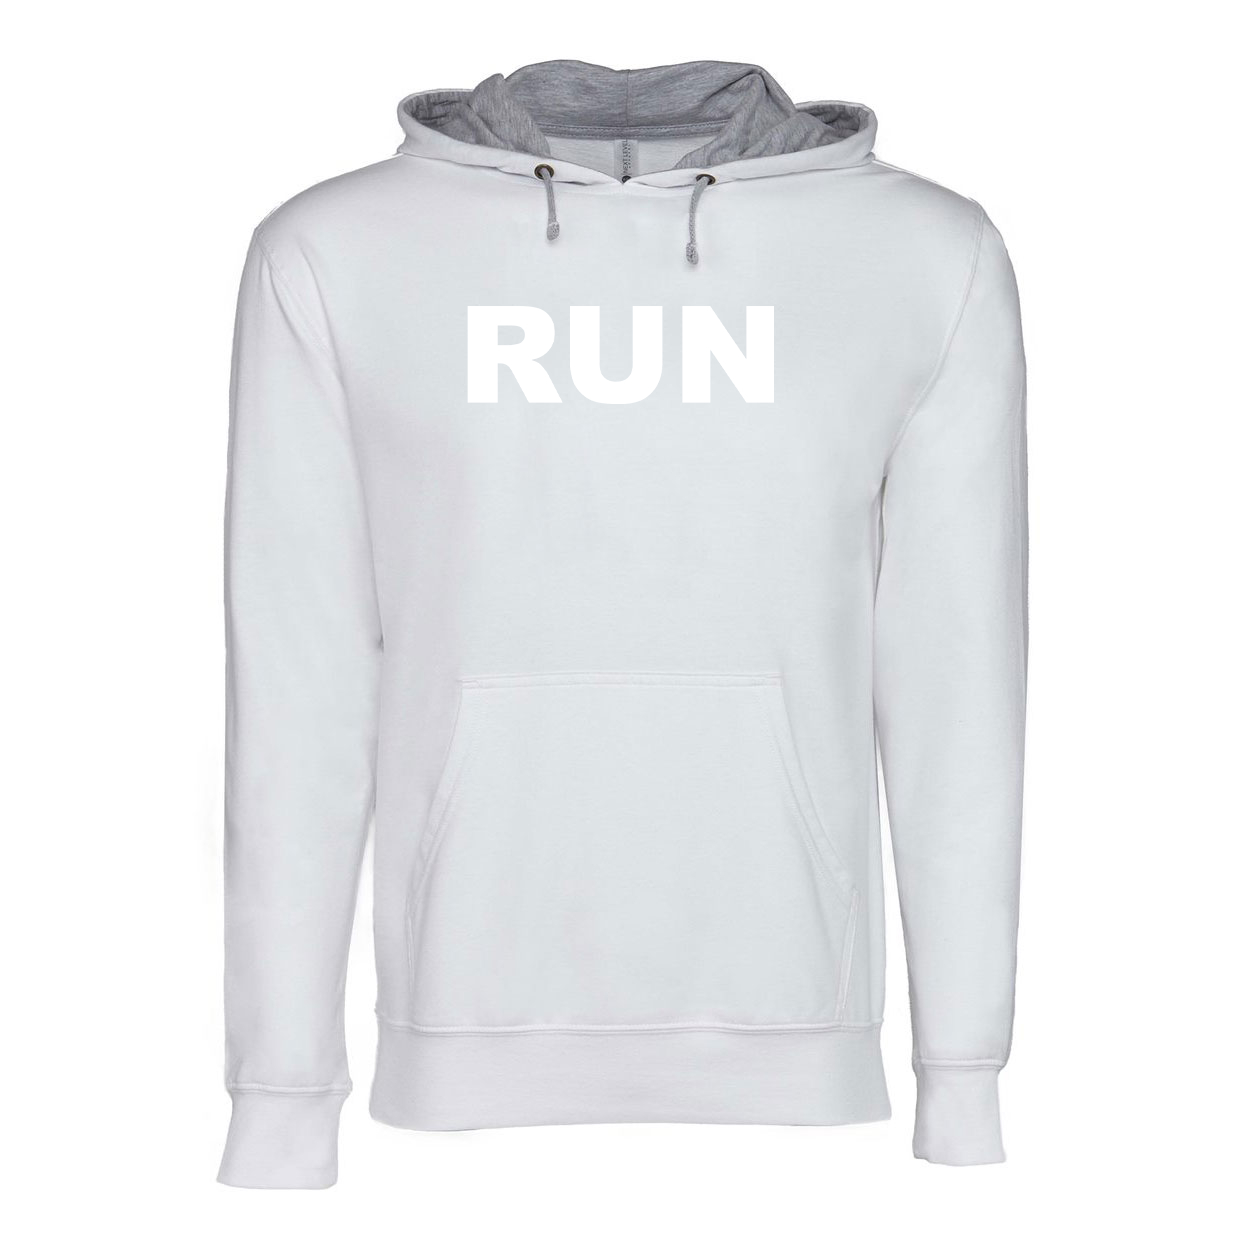 Run Brand Logo Classic Lightweight Sweatshirt White/Heather Gray 